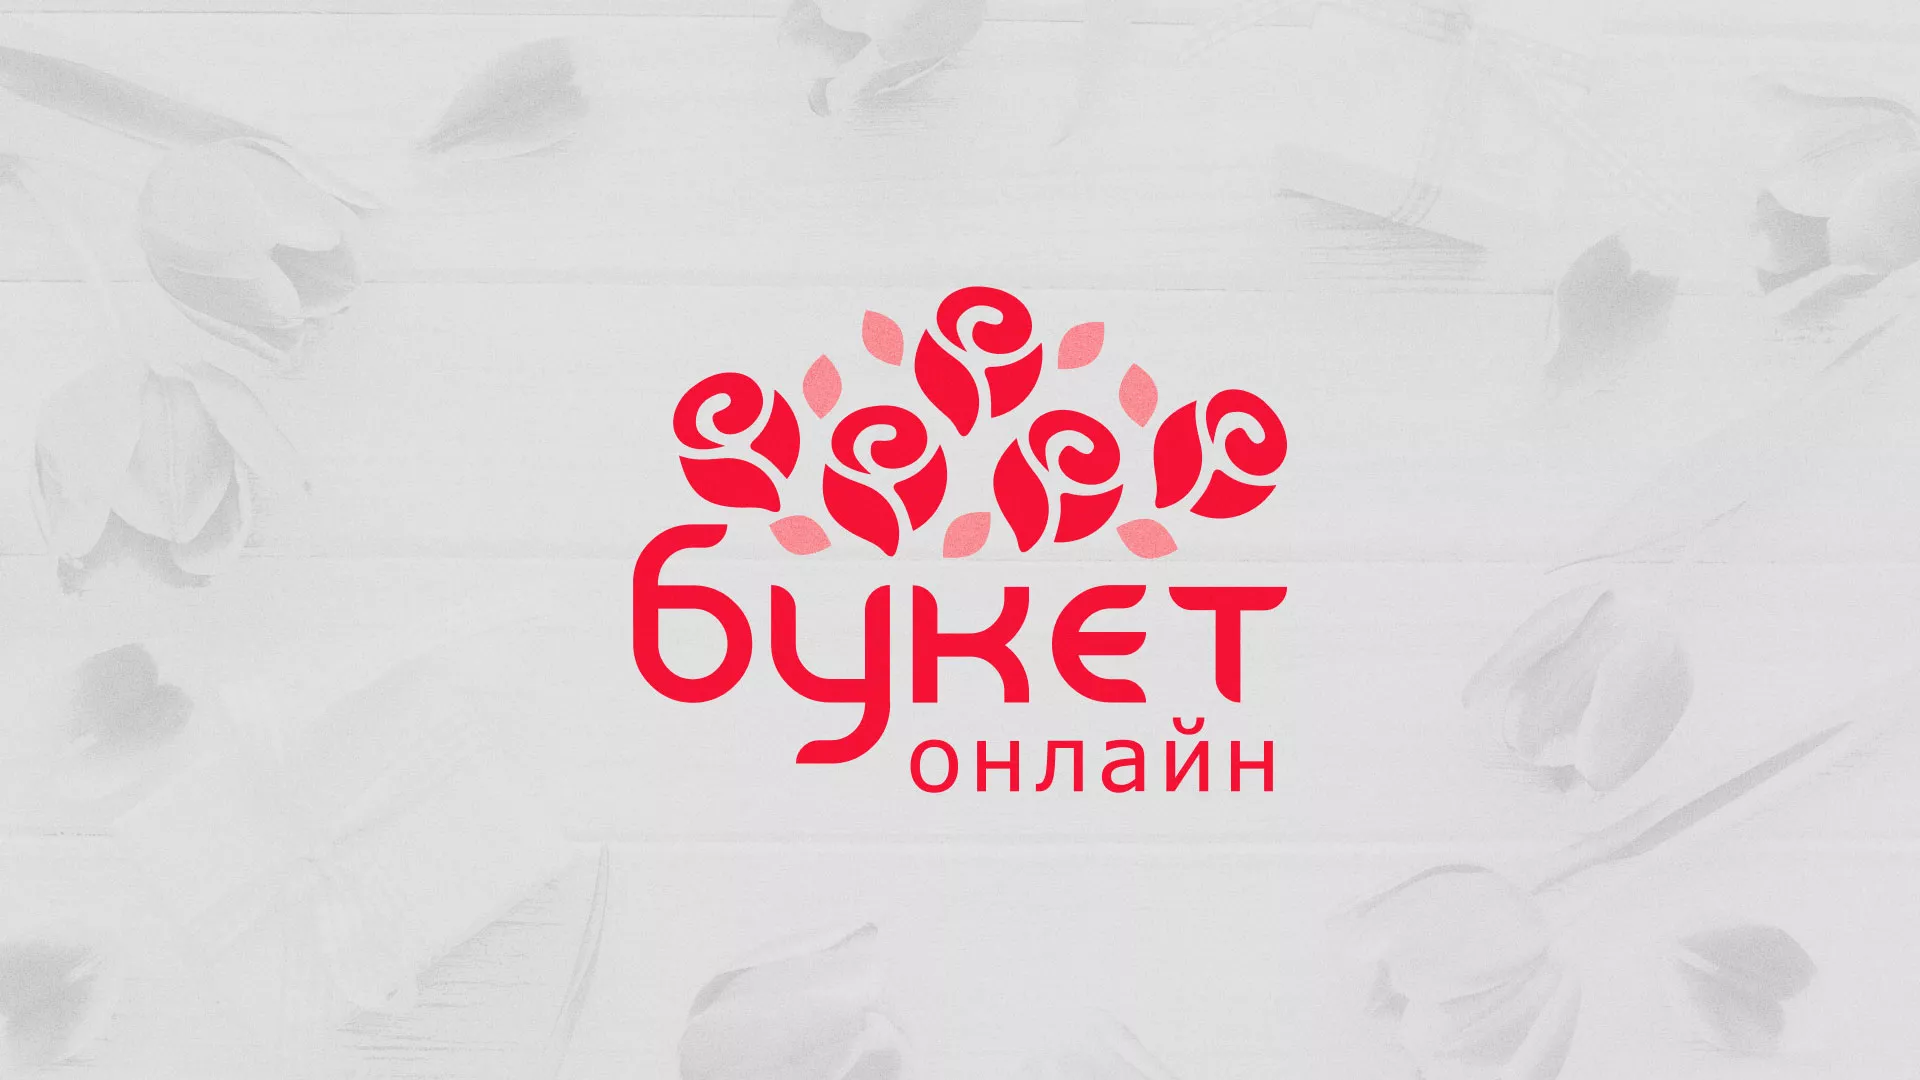 Создание интернет-магазина «Букет-онлайн» по цветам в Железноводске